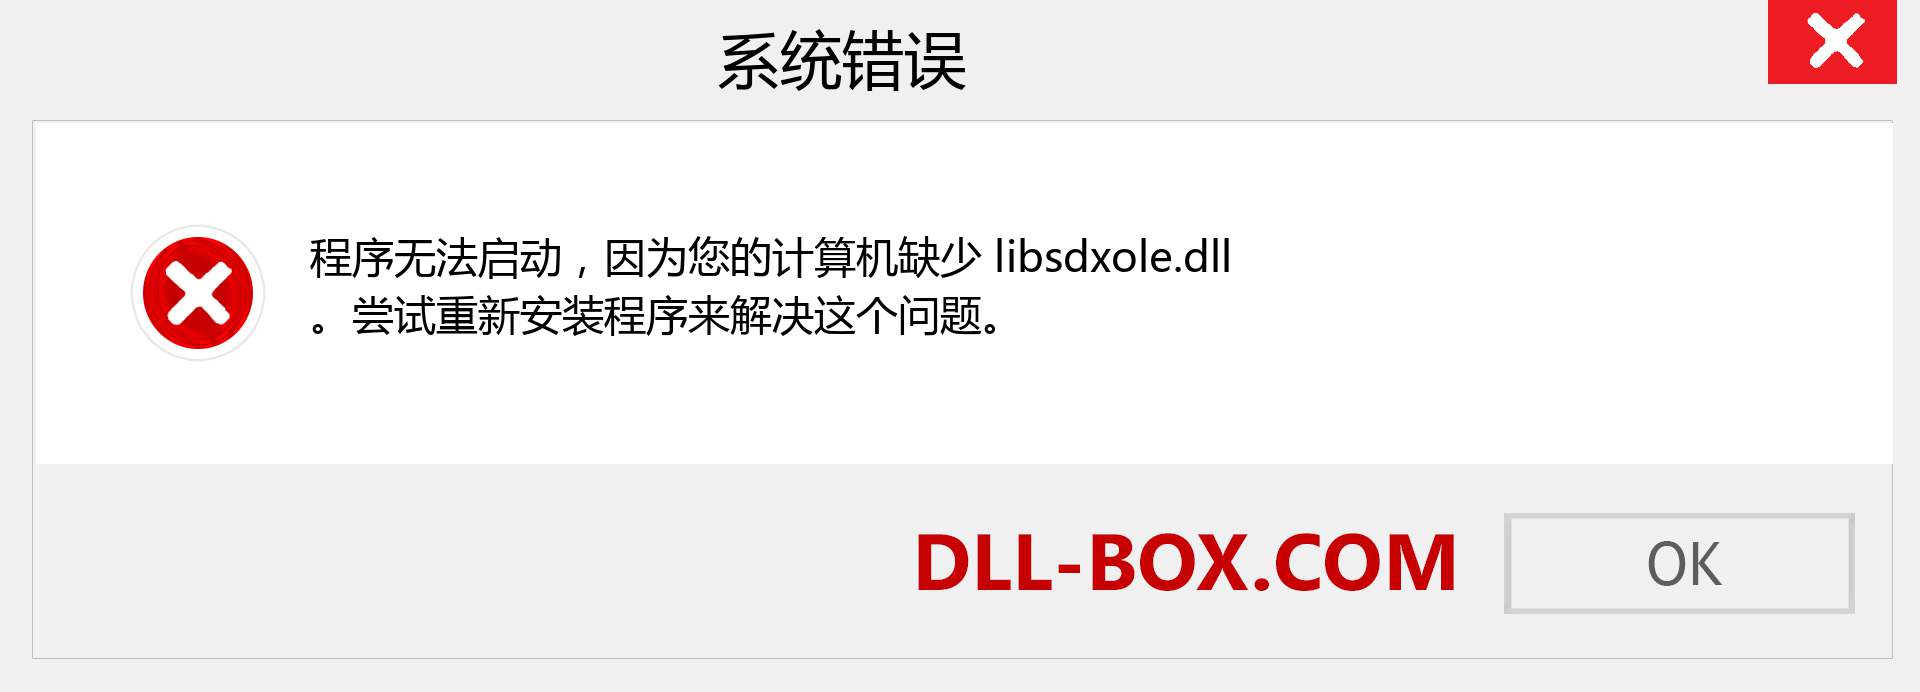 libsdxole.dll 文件丢失？。 适用于 Windows 7、8、10 的下载 - 修复 Windows、照片、图像上的 libsdxole dll 丢失错误